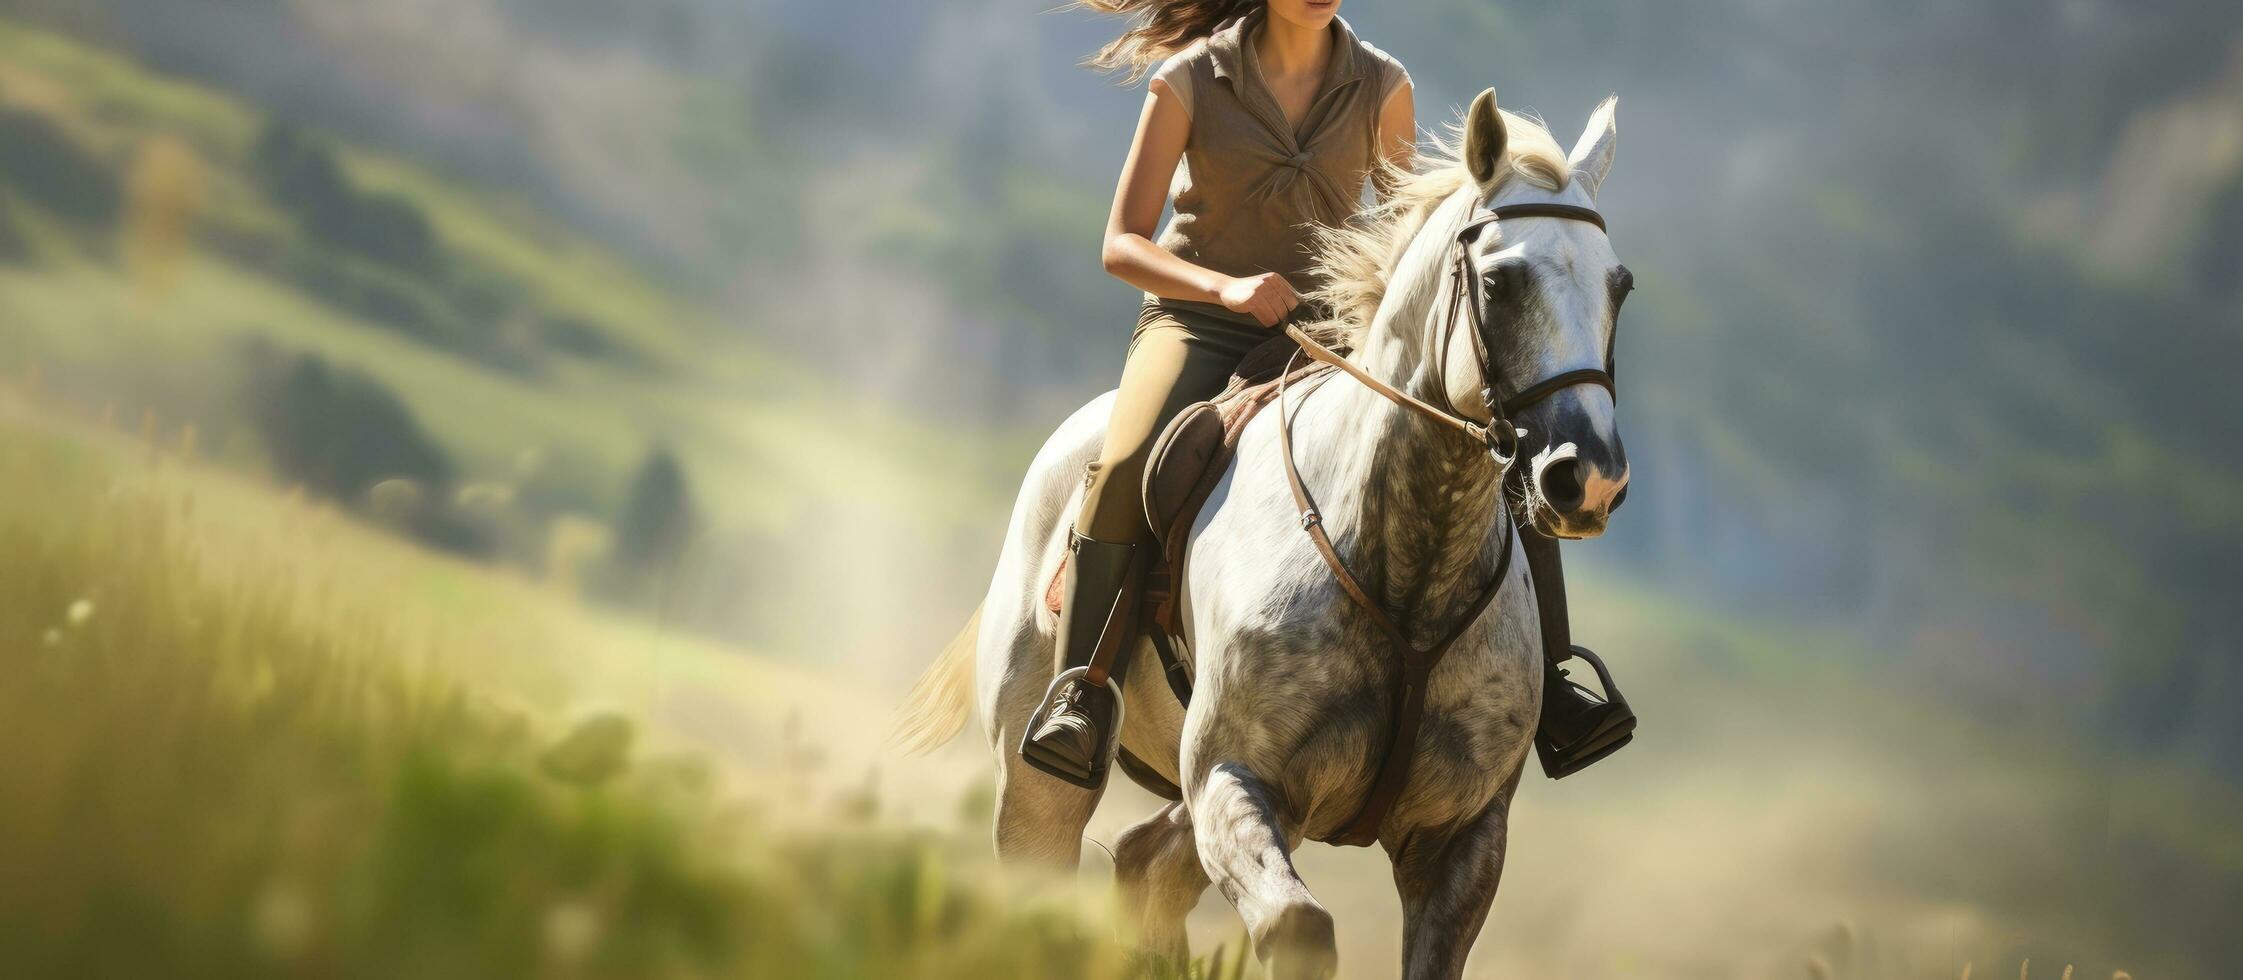 dentro profundidade representação do uma esporte envolvendo uma velozes corrida cavalo e uma jovem fêmea atleta foto